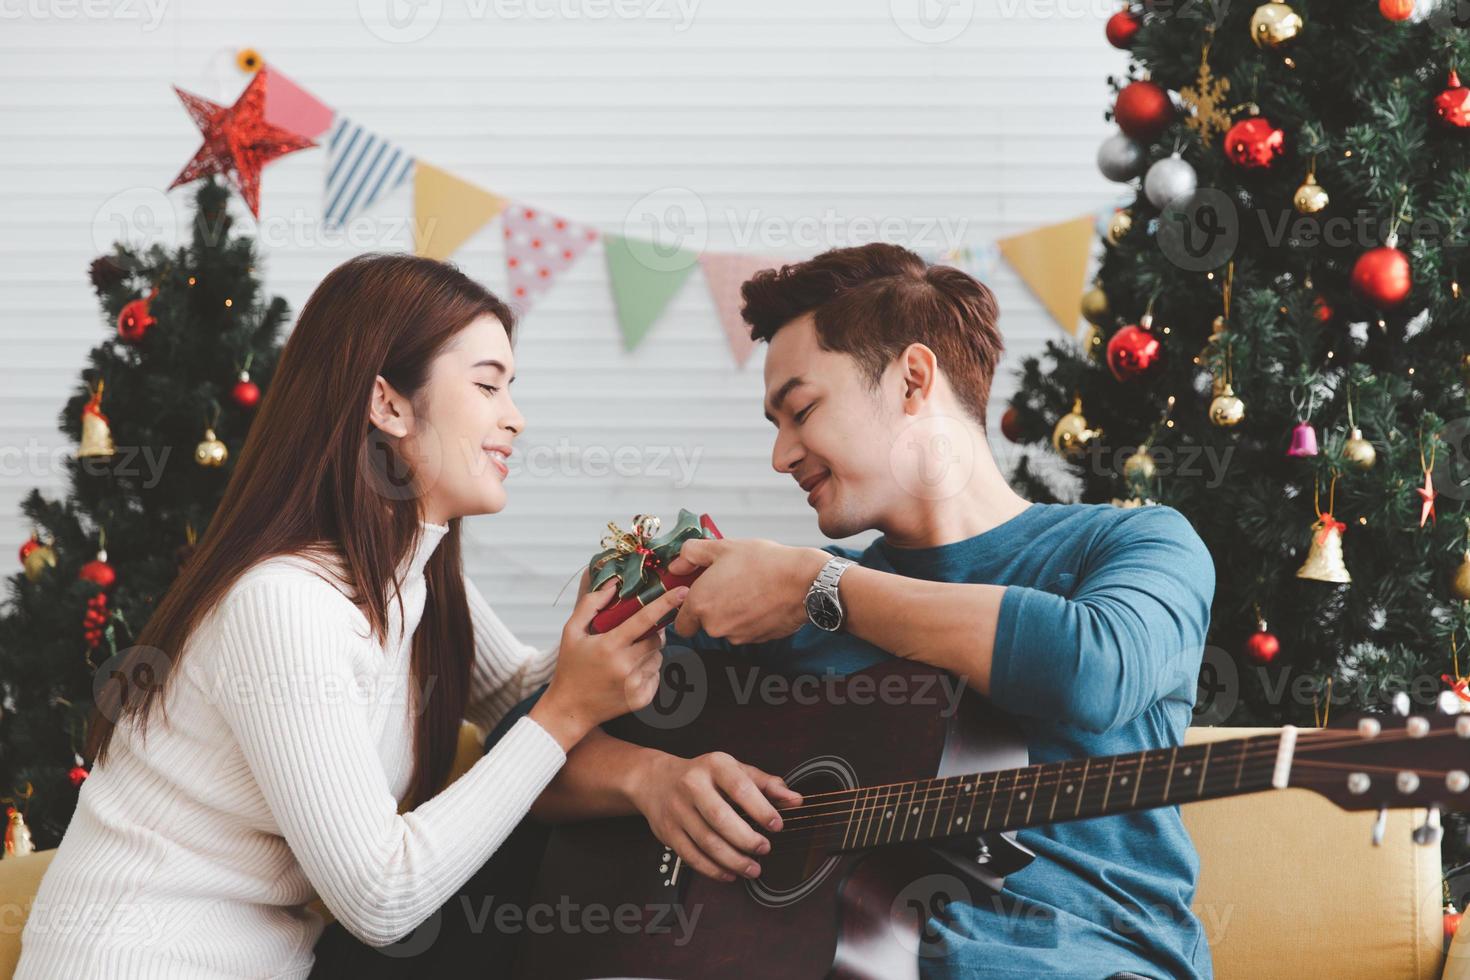 jovem adolescente adulto casal amoroso segurando a caixa de presente e olhando um para o outro durante a celebração do feriado de natal juntos na sala de estar com decoração de enfeite de árvore de natal foto